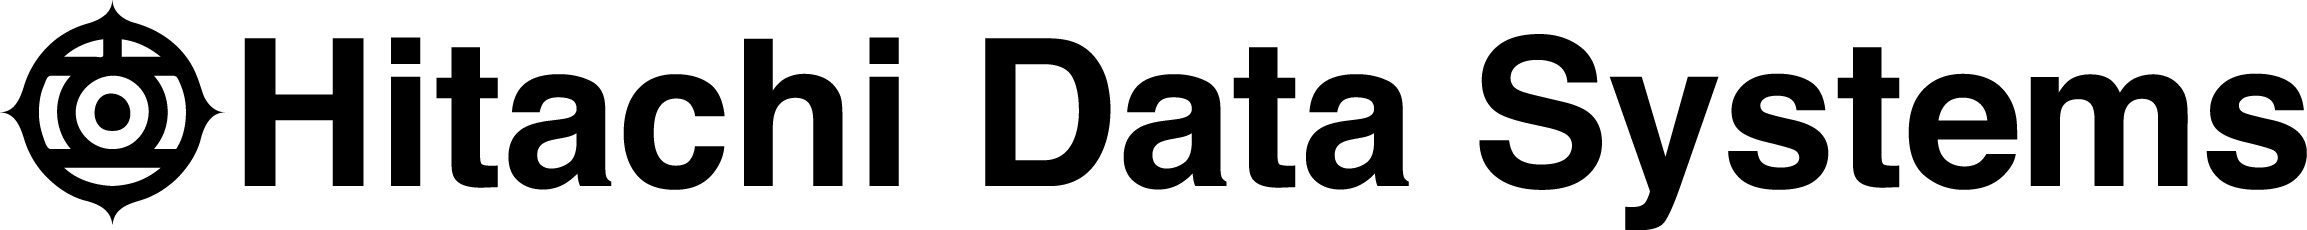 Hitachi Data Systems Company Logo